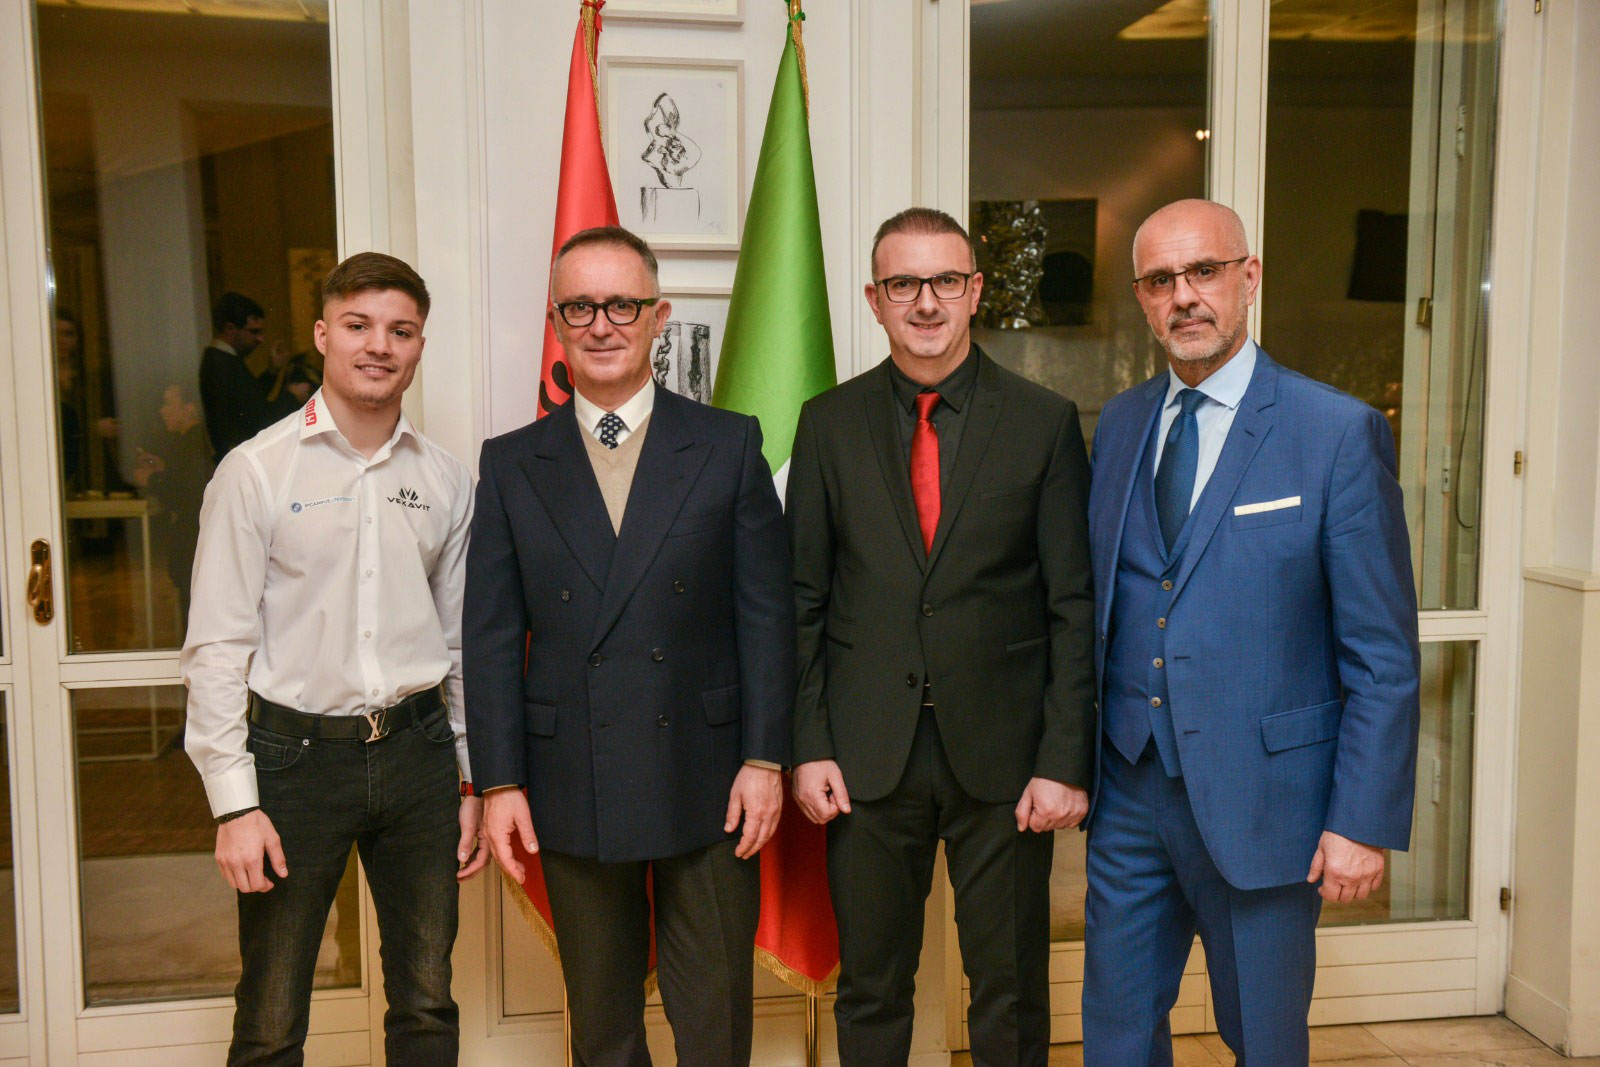 MIM’s GANDOLFO, ZENDELI INVITED BY ITALIAN EMBASSY IN ALBANIA